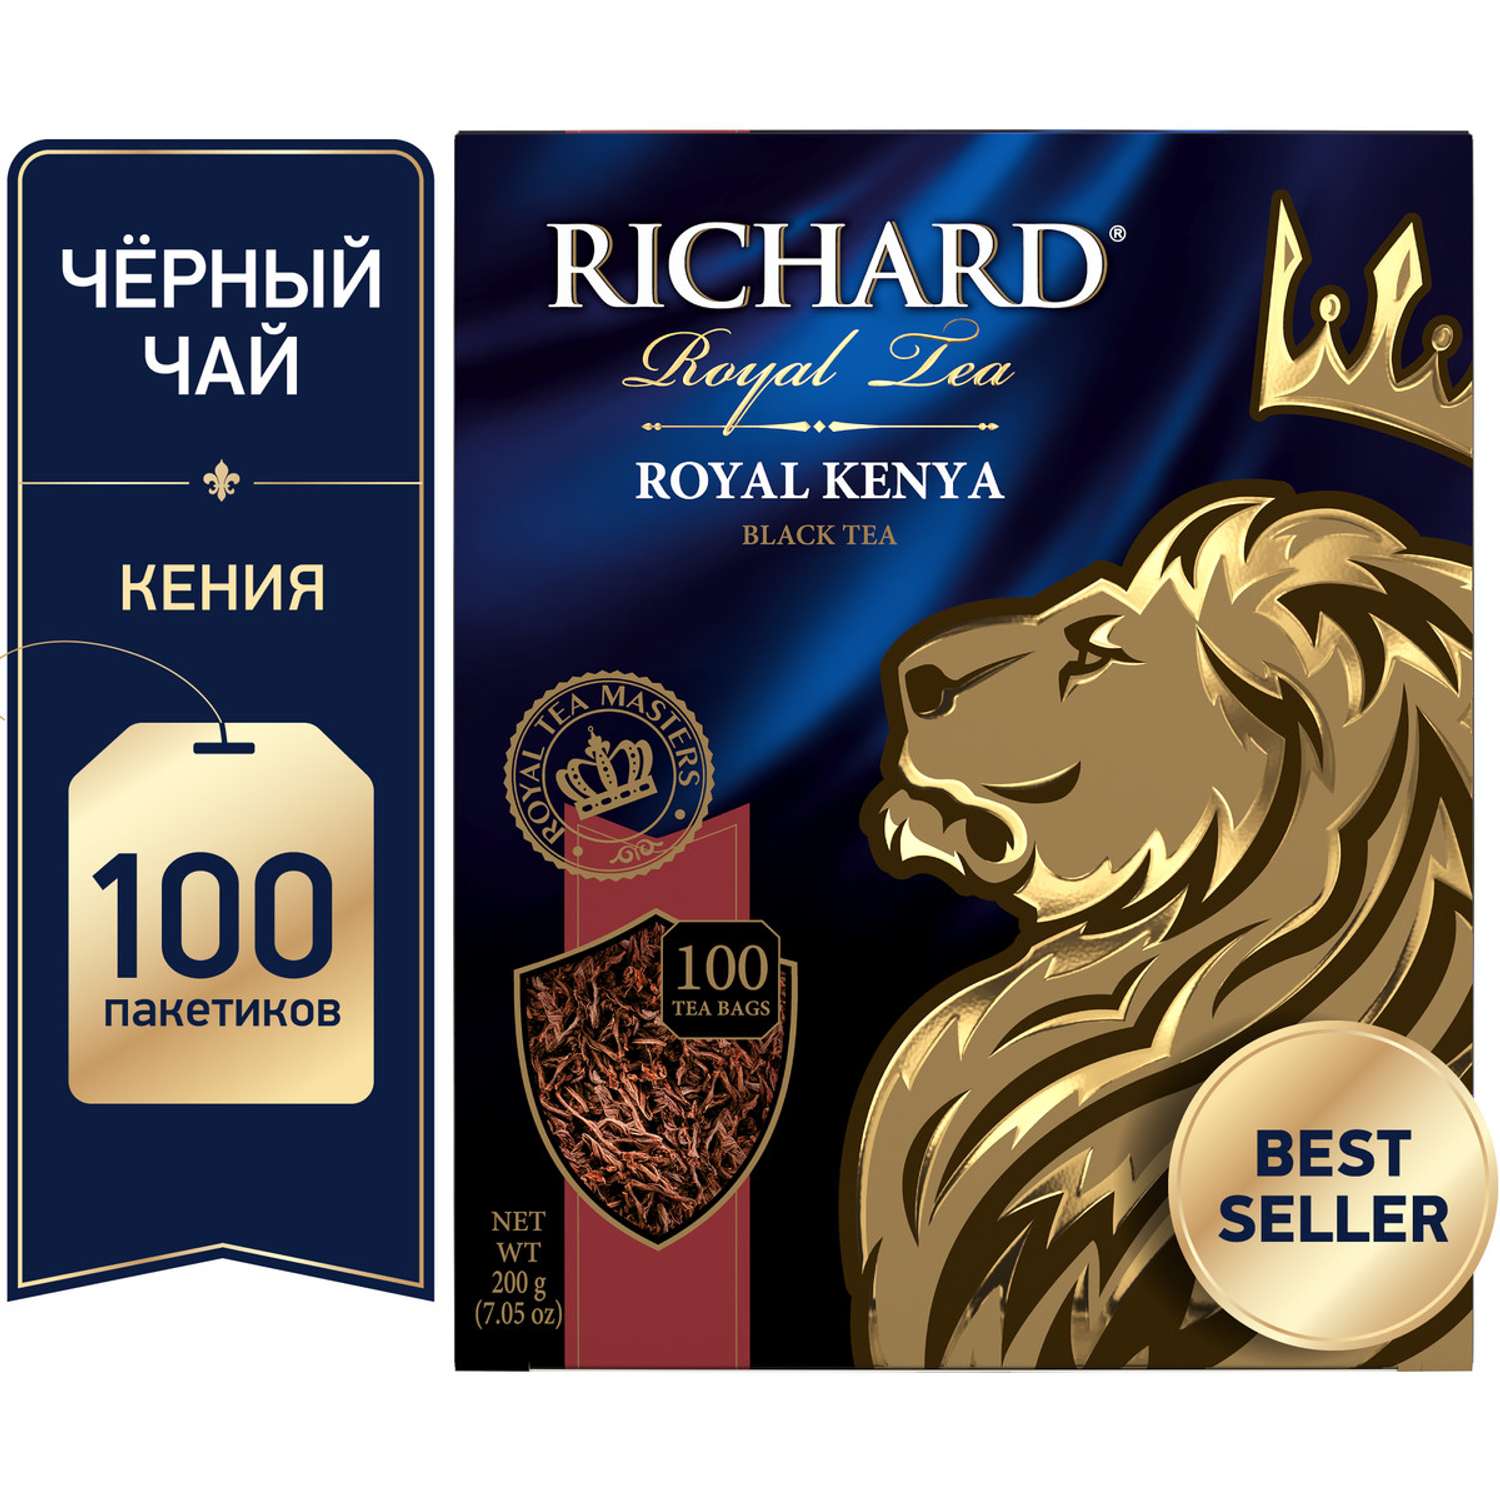 Чай черный Richard Royal Kenya 100 пакетиков - фото 2